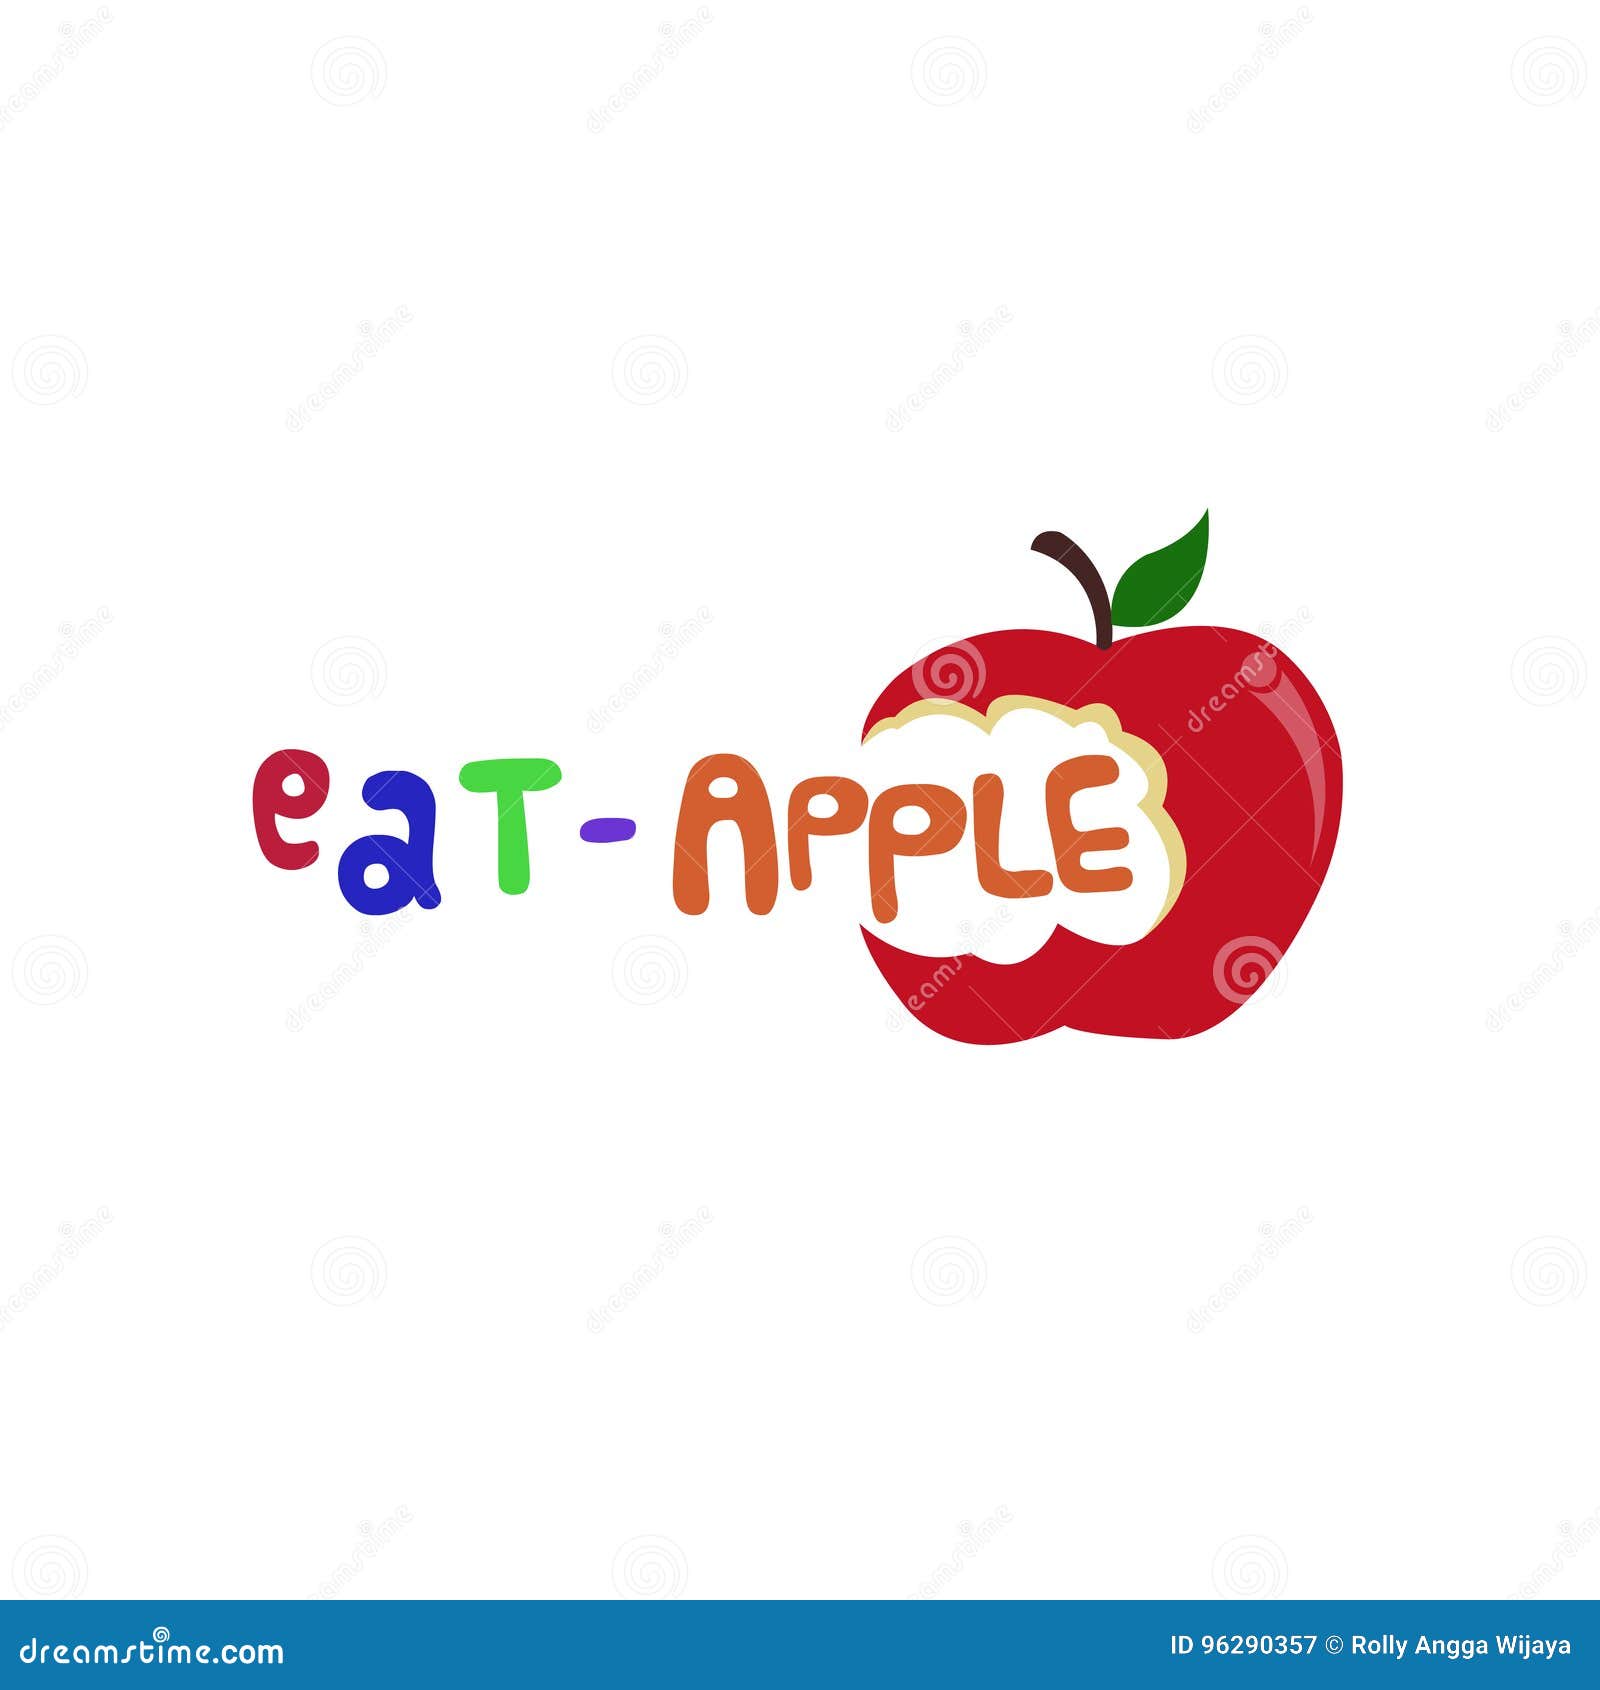 Eat Apple Logo Illustration 96290357 - Megapixl